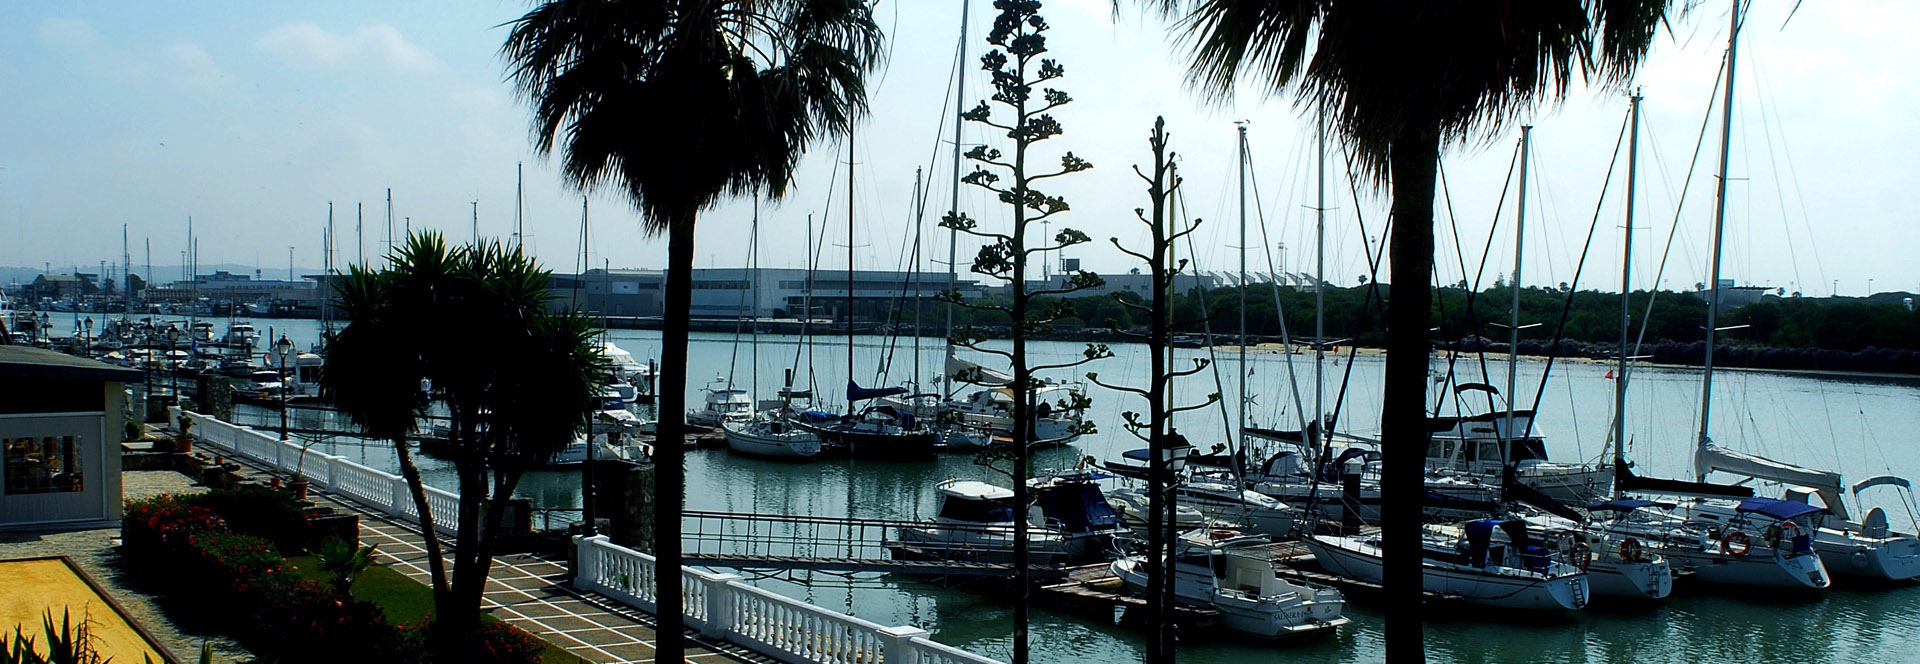 Ciudadano Un pan Bienes Inmobiliaria Guadalete :: Alquiler y venta de casas en el Puerto Santa Maria  Cádiz